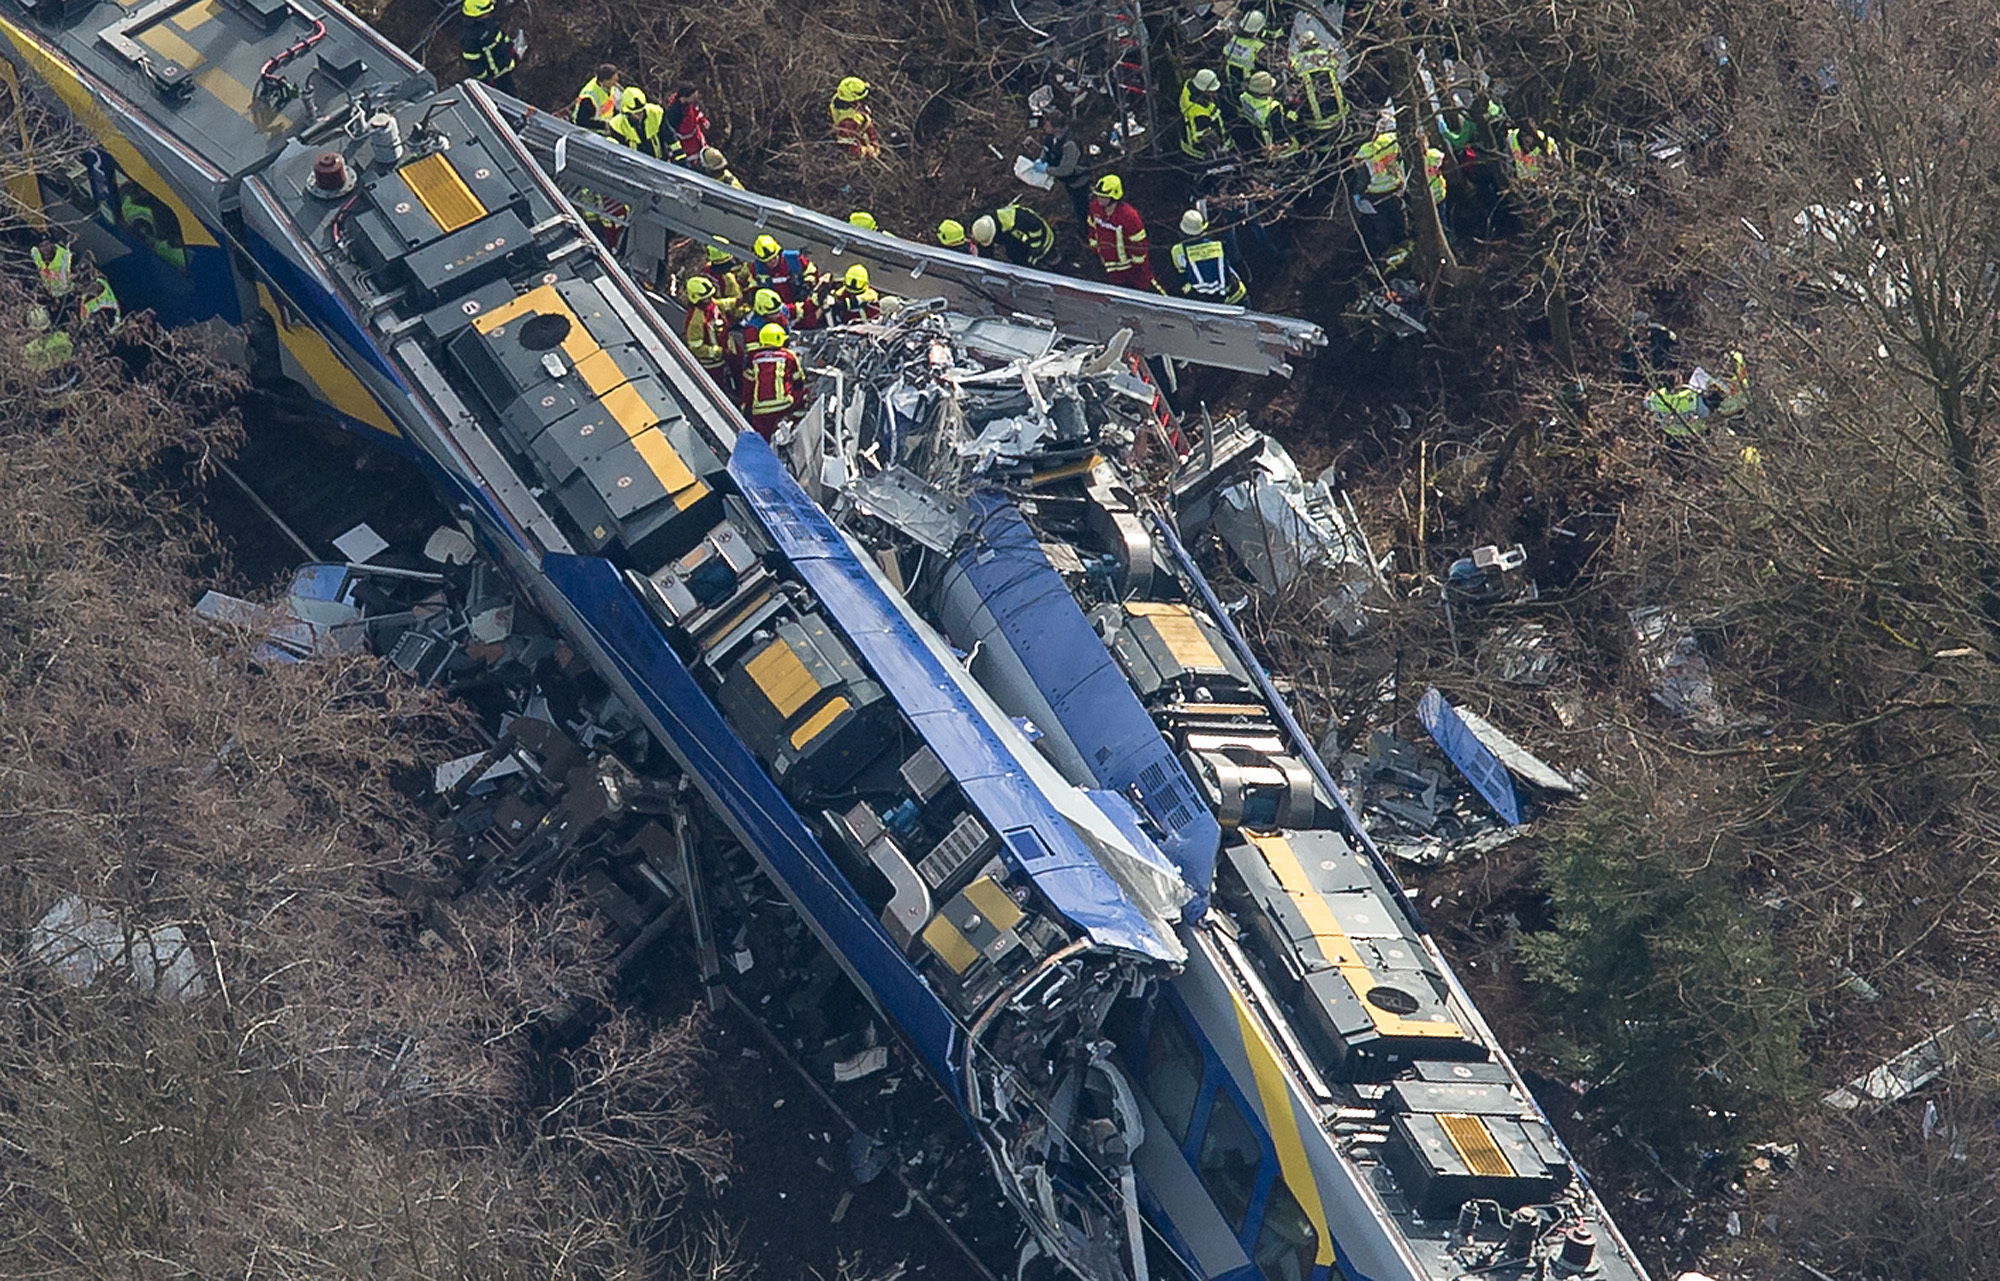 Előzetesbe került a bajorországi vonatbalesetért felelős diszpécser, aki a mobilján játszott a tragédia előtti percekben